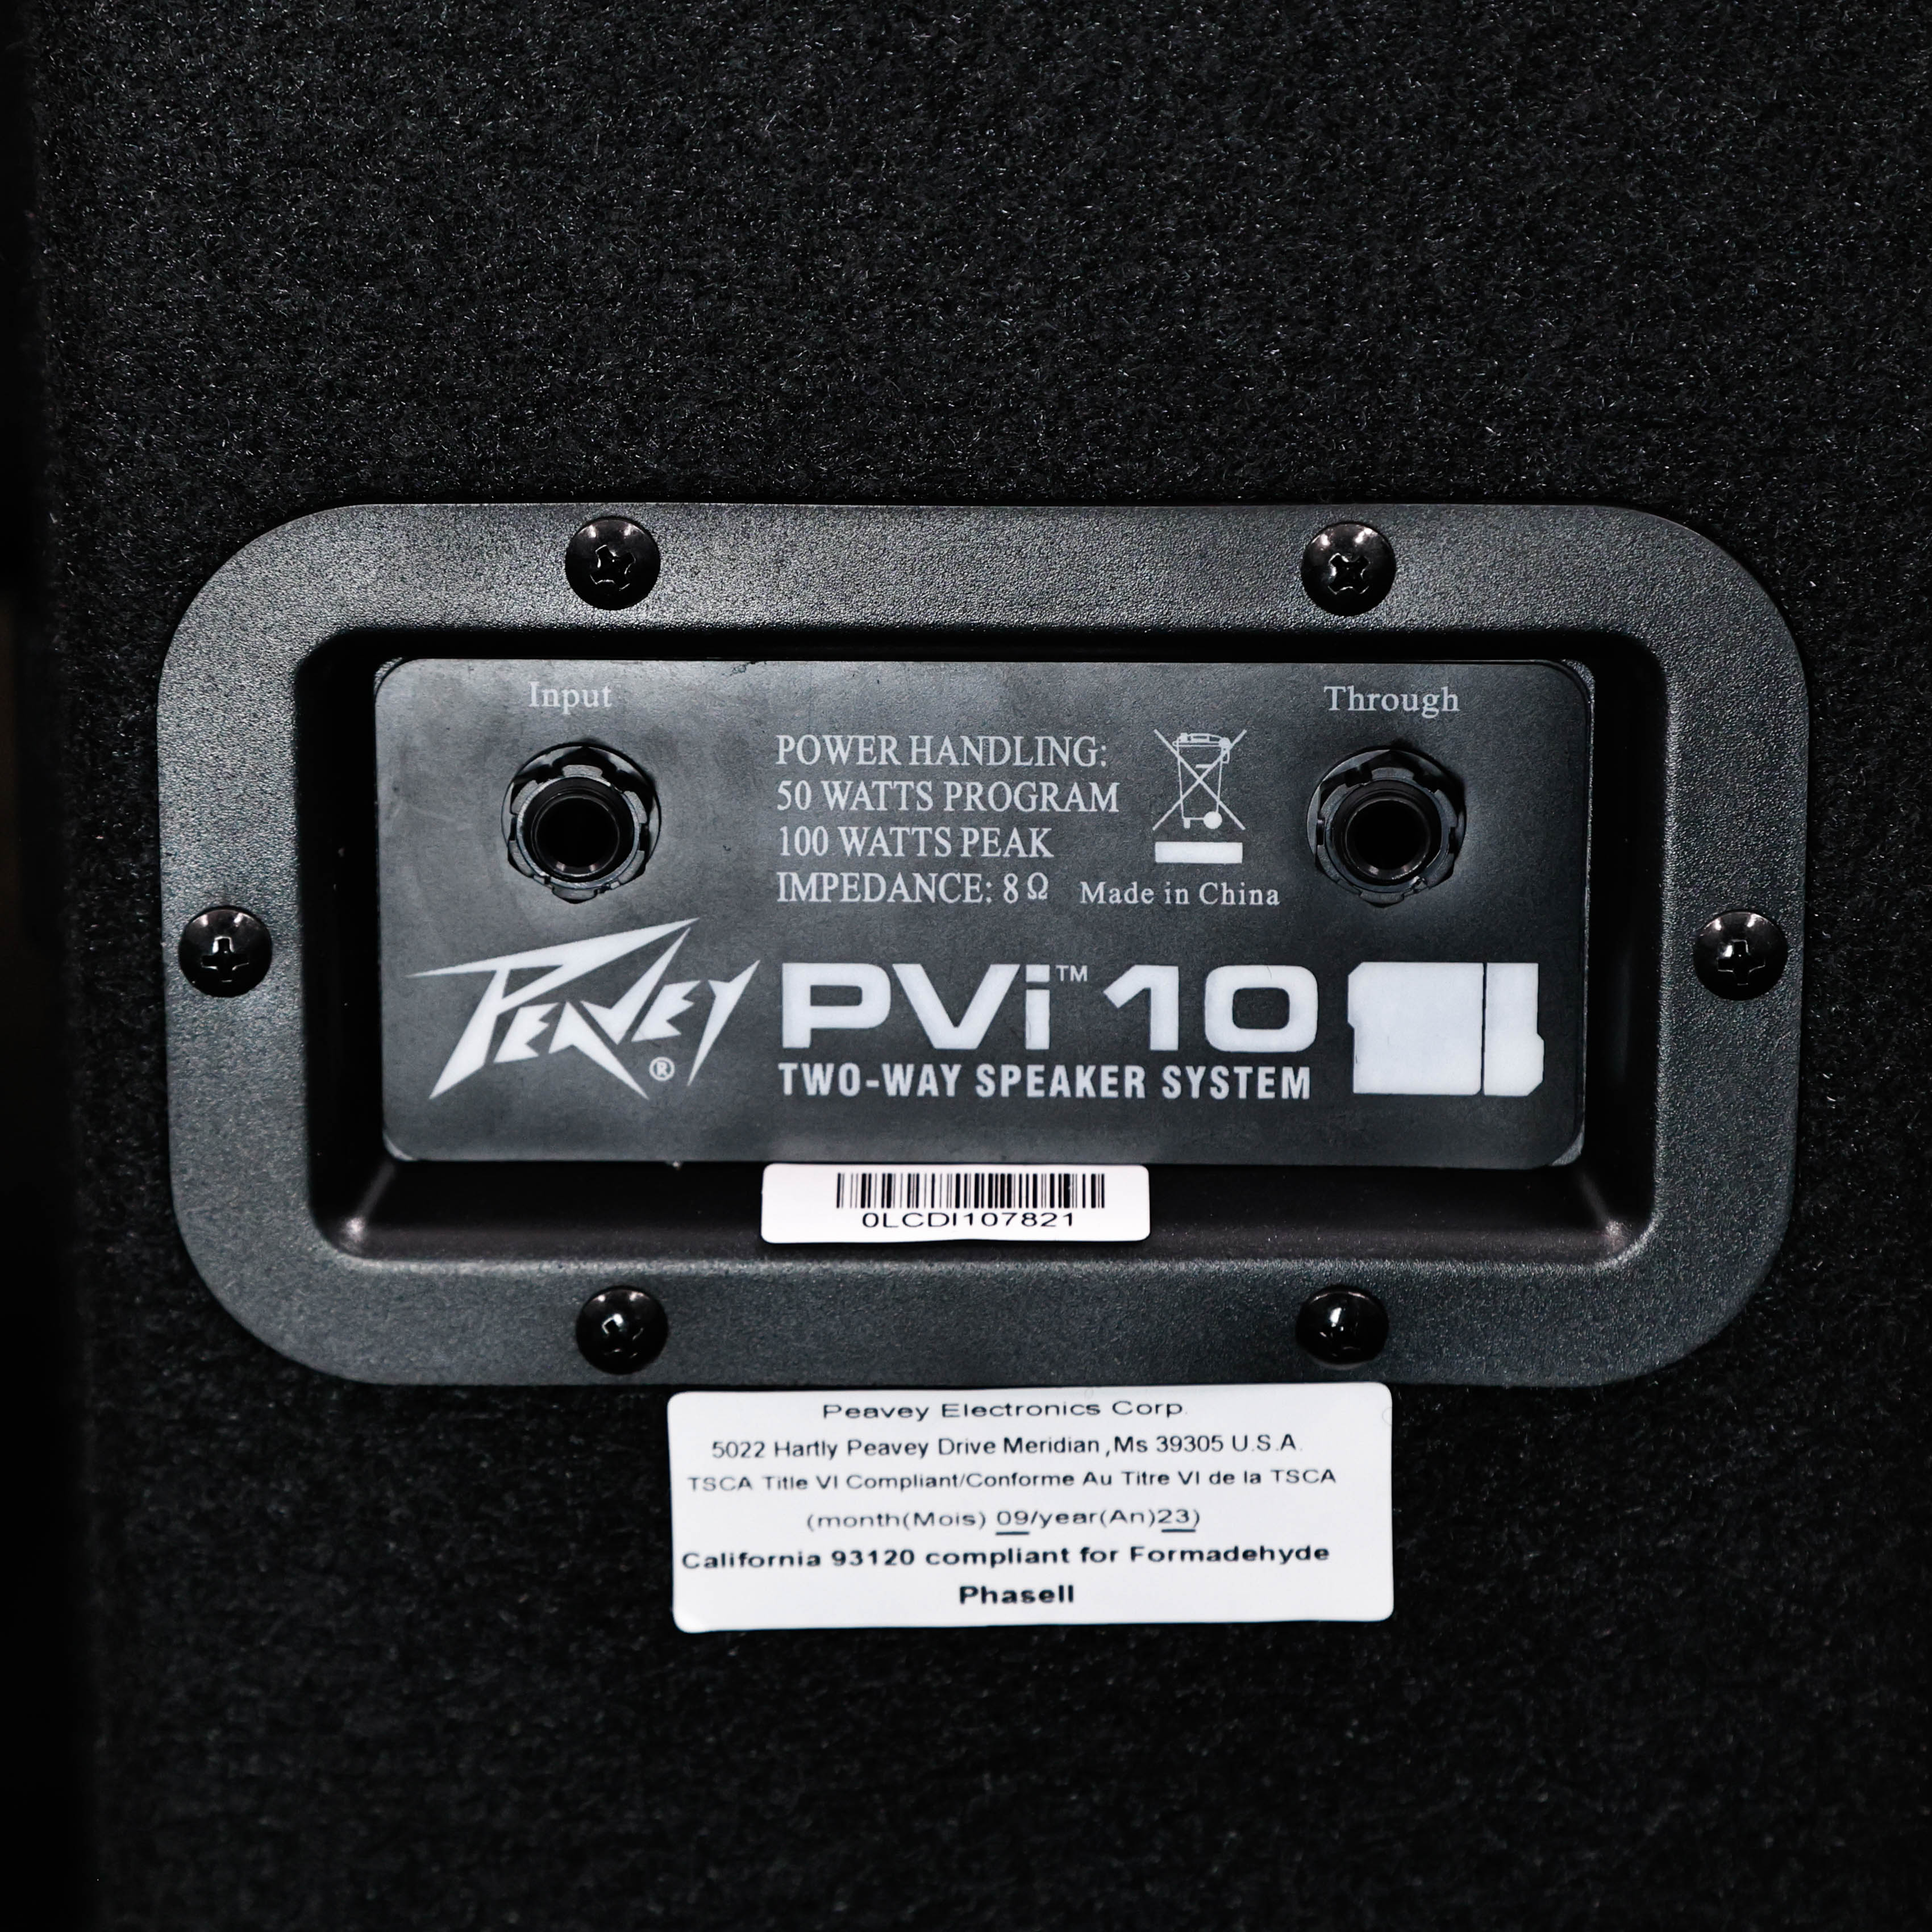 Peavey PVi 10 1 X 10'' 50W 2-Way Passive Monitor Speaker PAIR